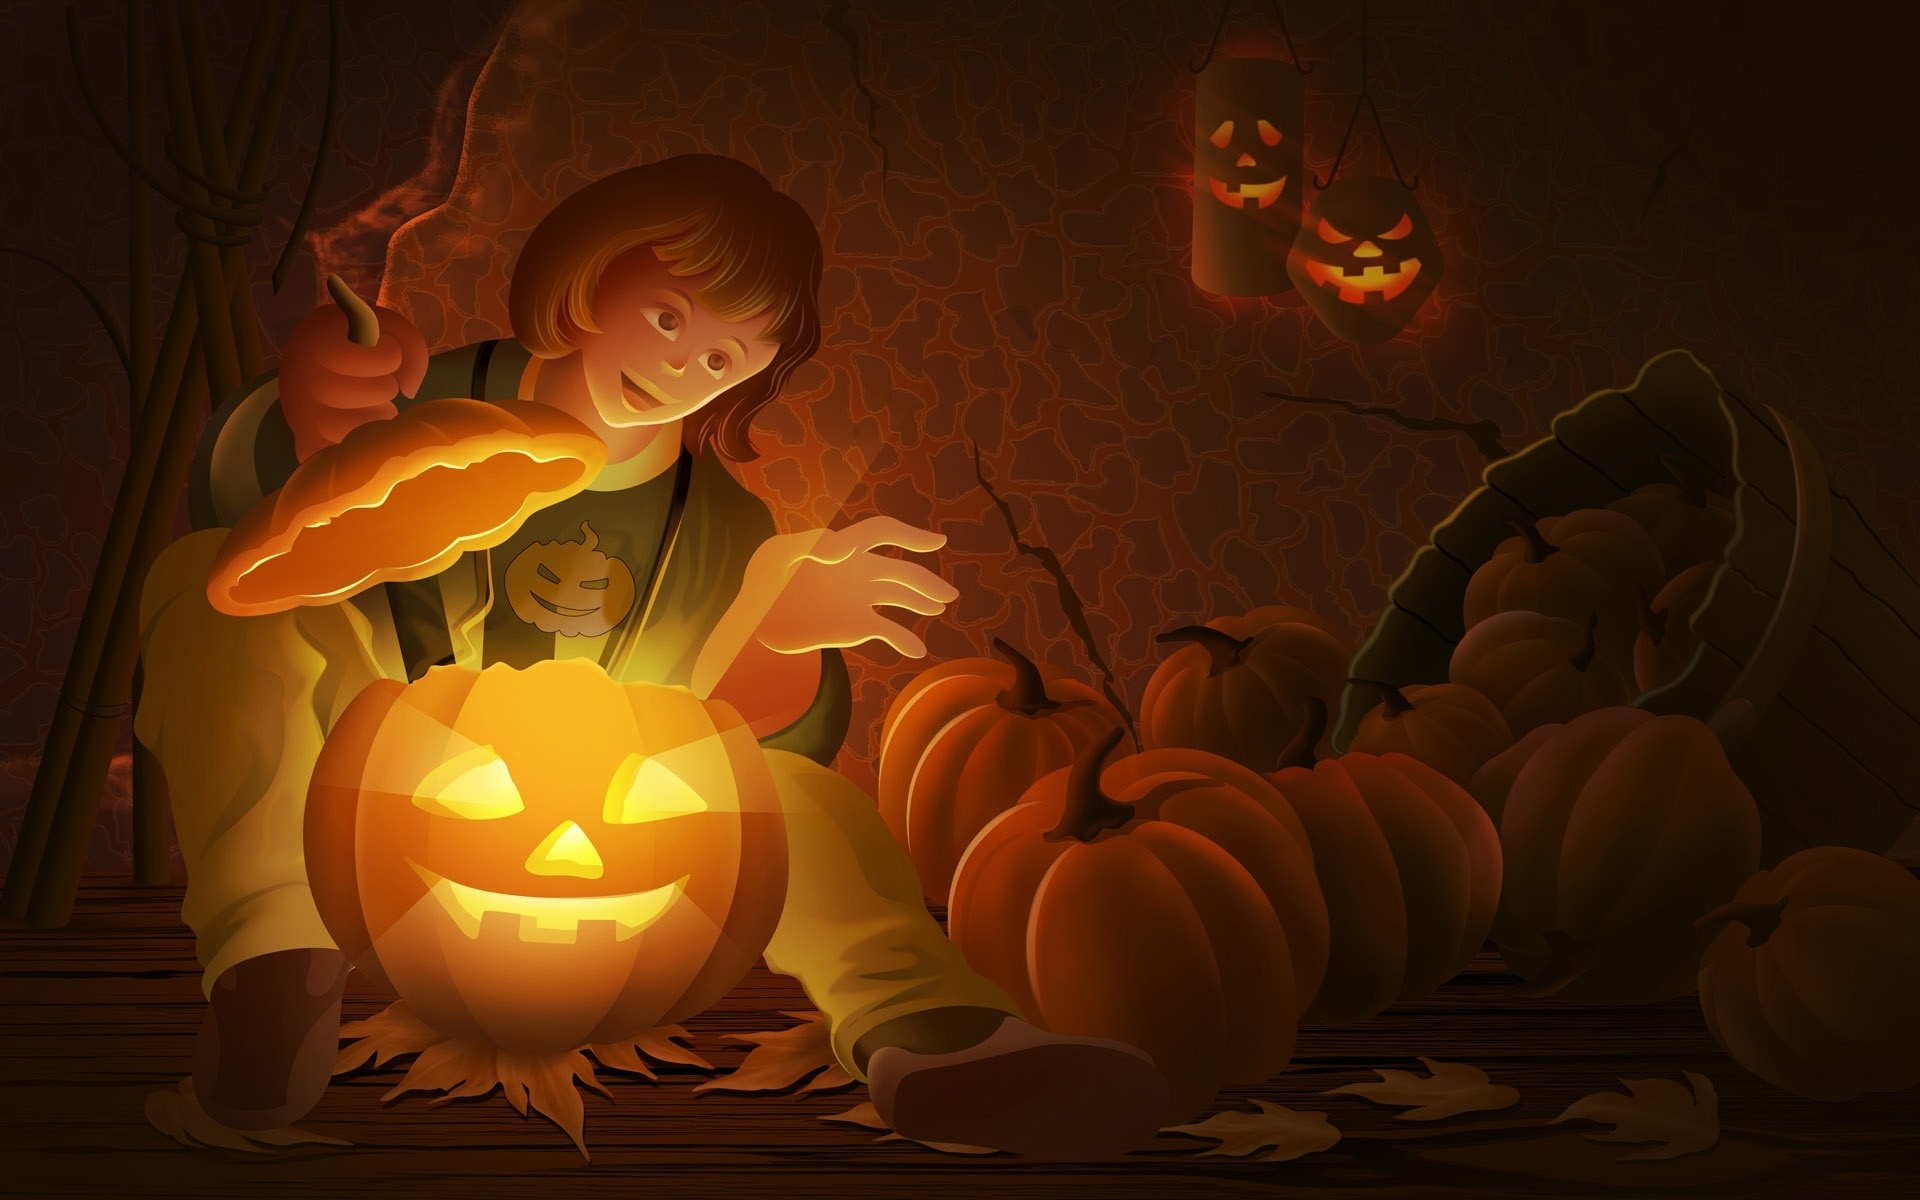 Cool Halloween Pumpkin for 1920 x 1200 widescreen resolution